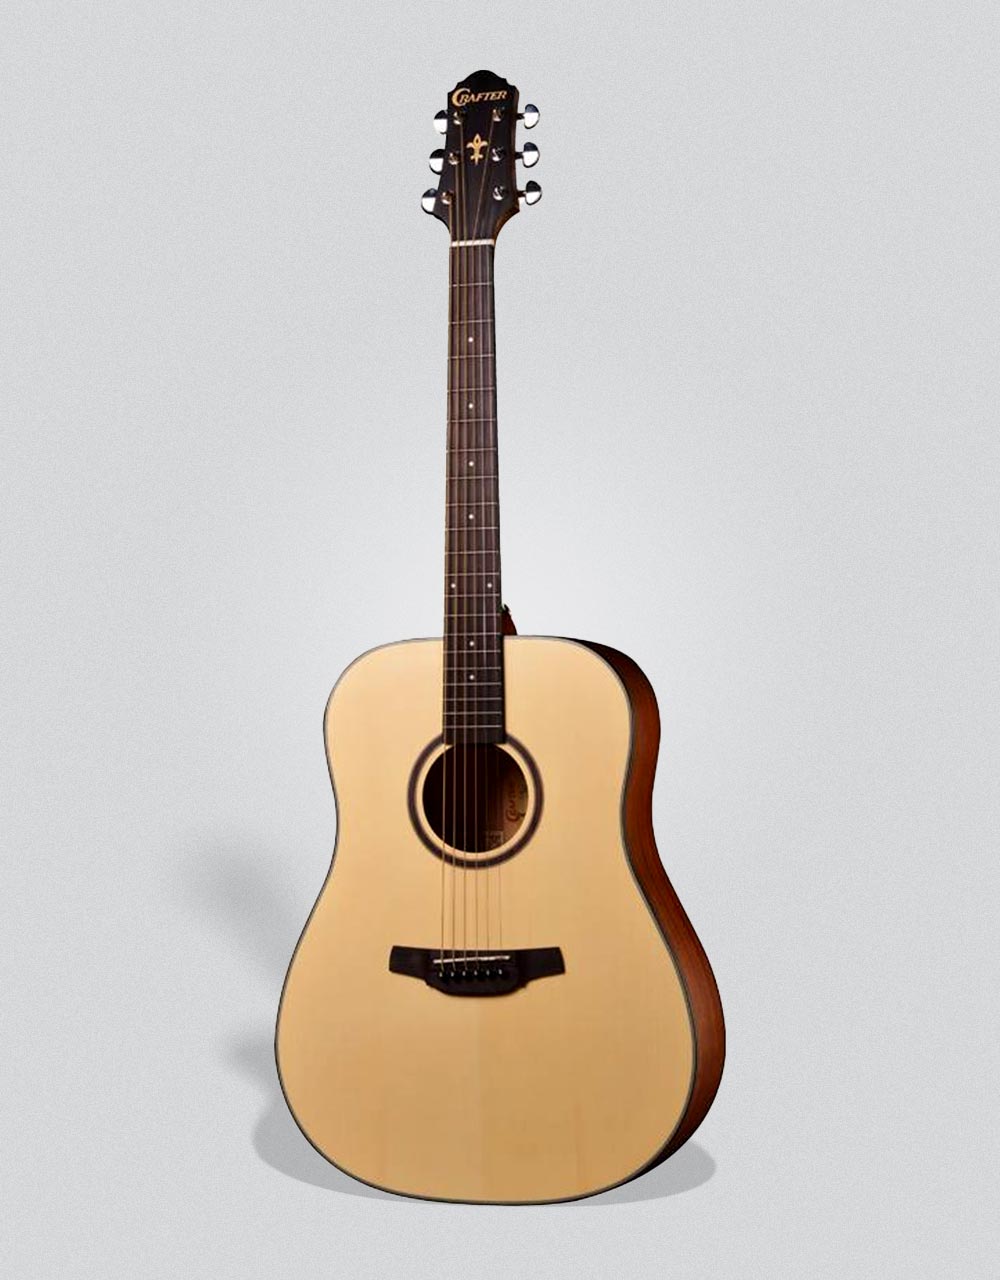 Акустическая гитара Crafter HD-100/OP.N - купить в "Гитарном Клубе"